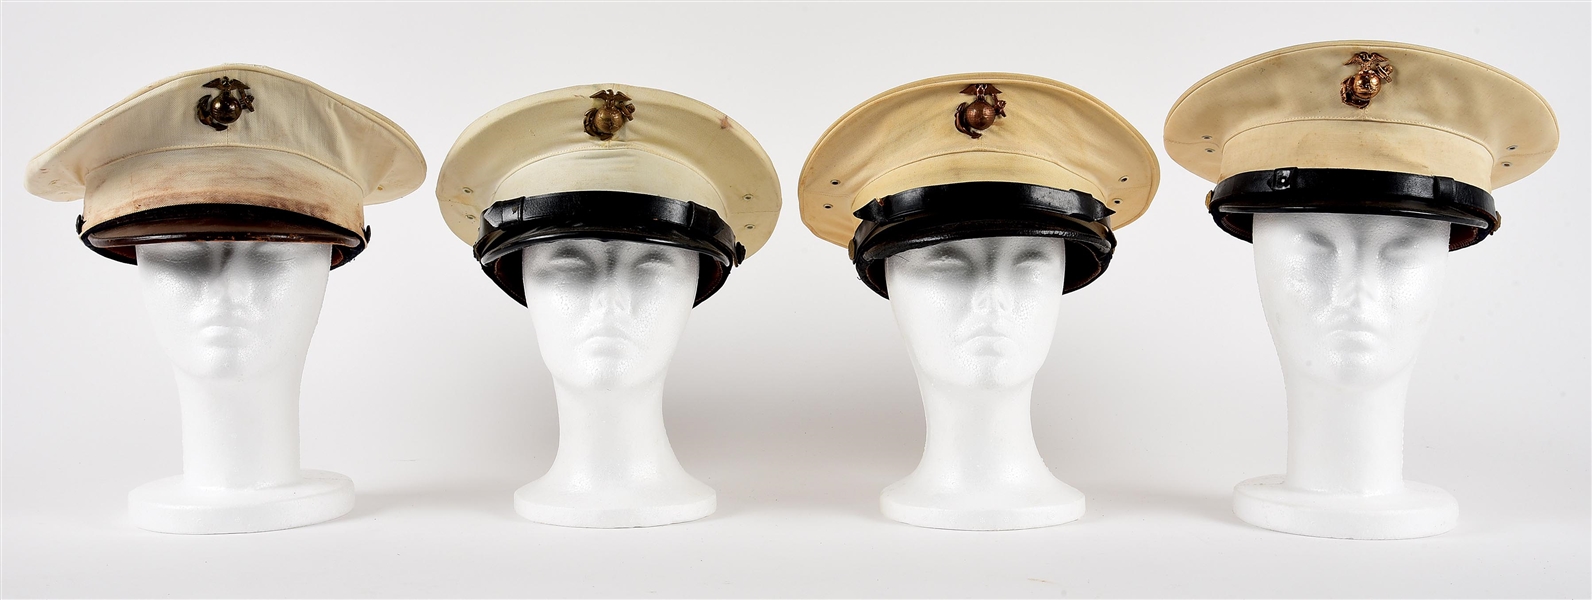 LOT OF 4: USMC DRESS WHITE VISOR HATS 